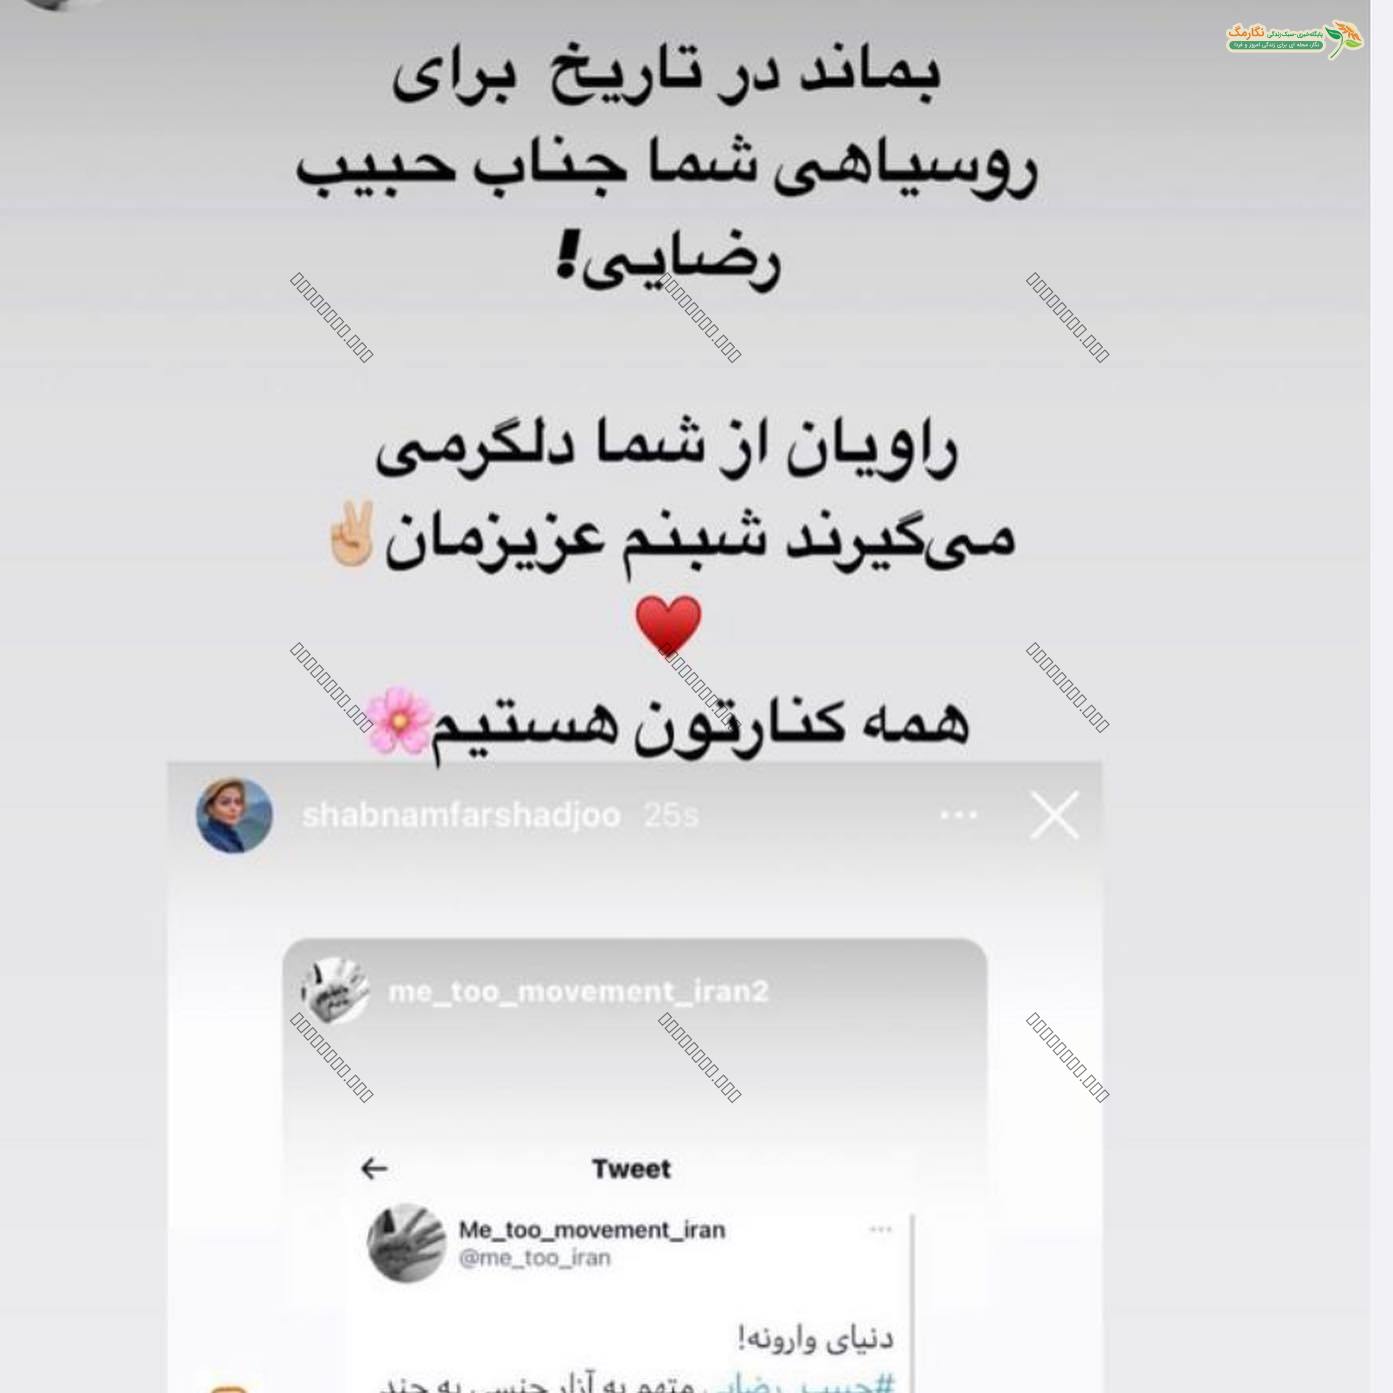 واکنش شبنم فرشاد جو به پرونده آزارگری ... وکلایم در ایران حسابتون رو میرسند !